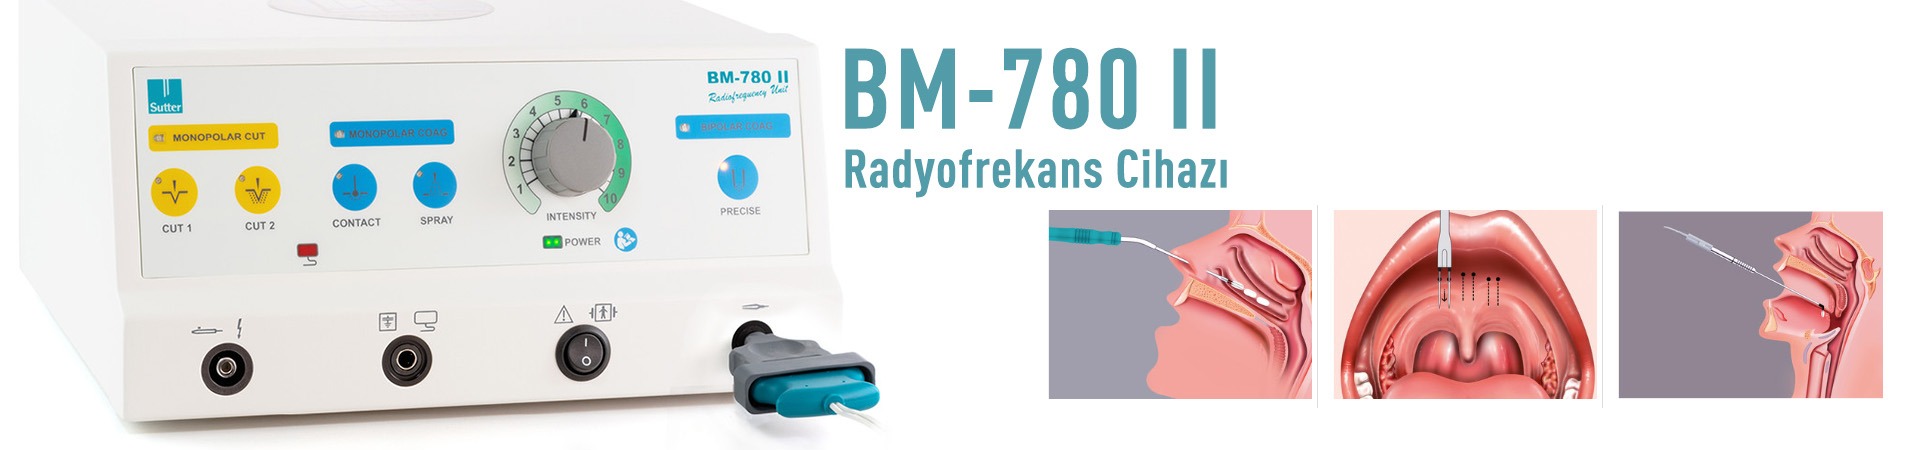 BM780-II Radyofrekans Cihazı 1.2 Mhz